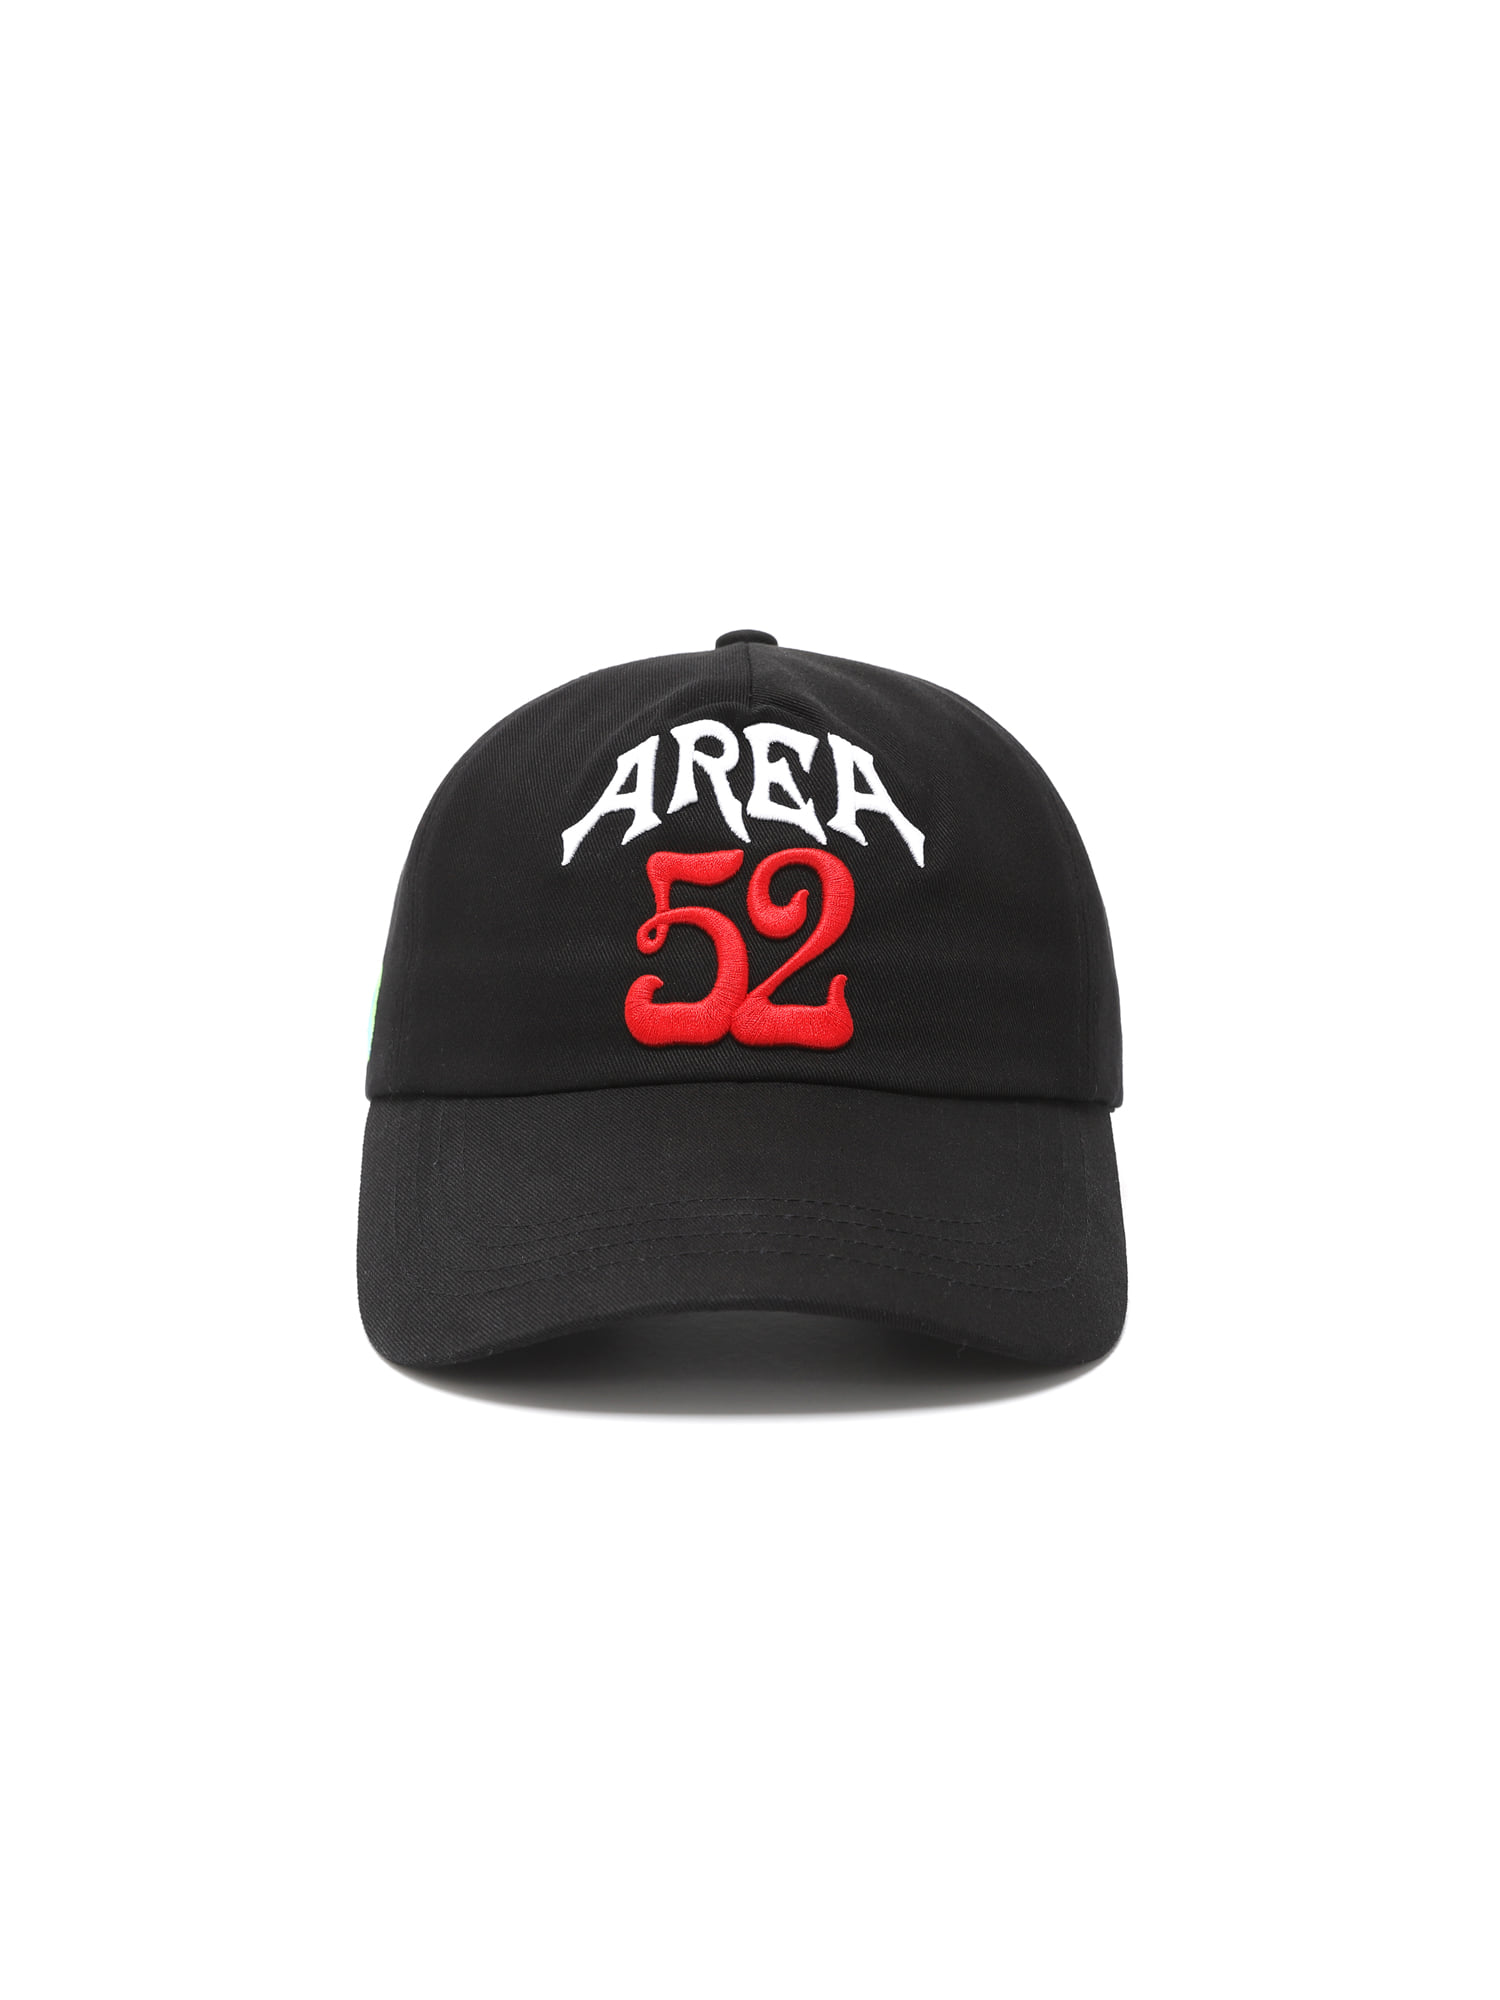 WD AREA 52 CAP BLACK